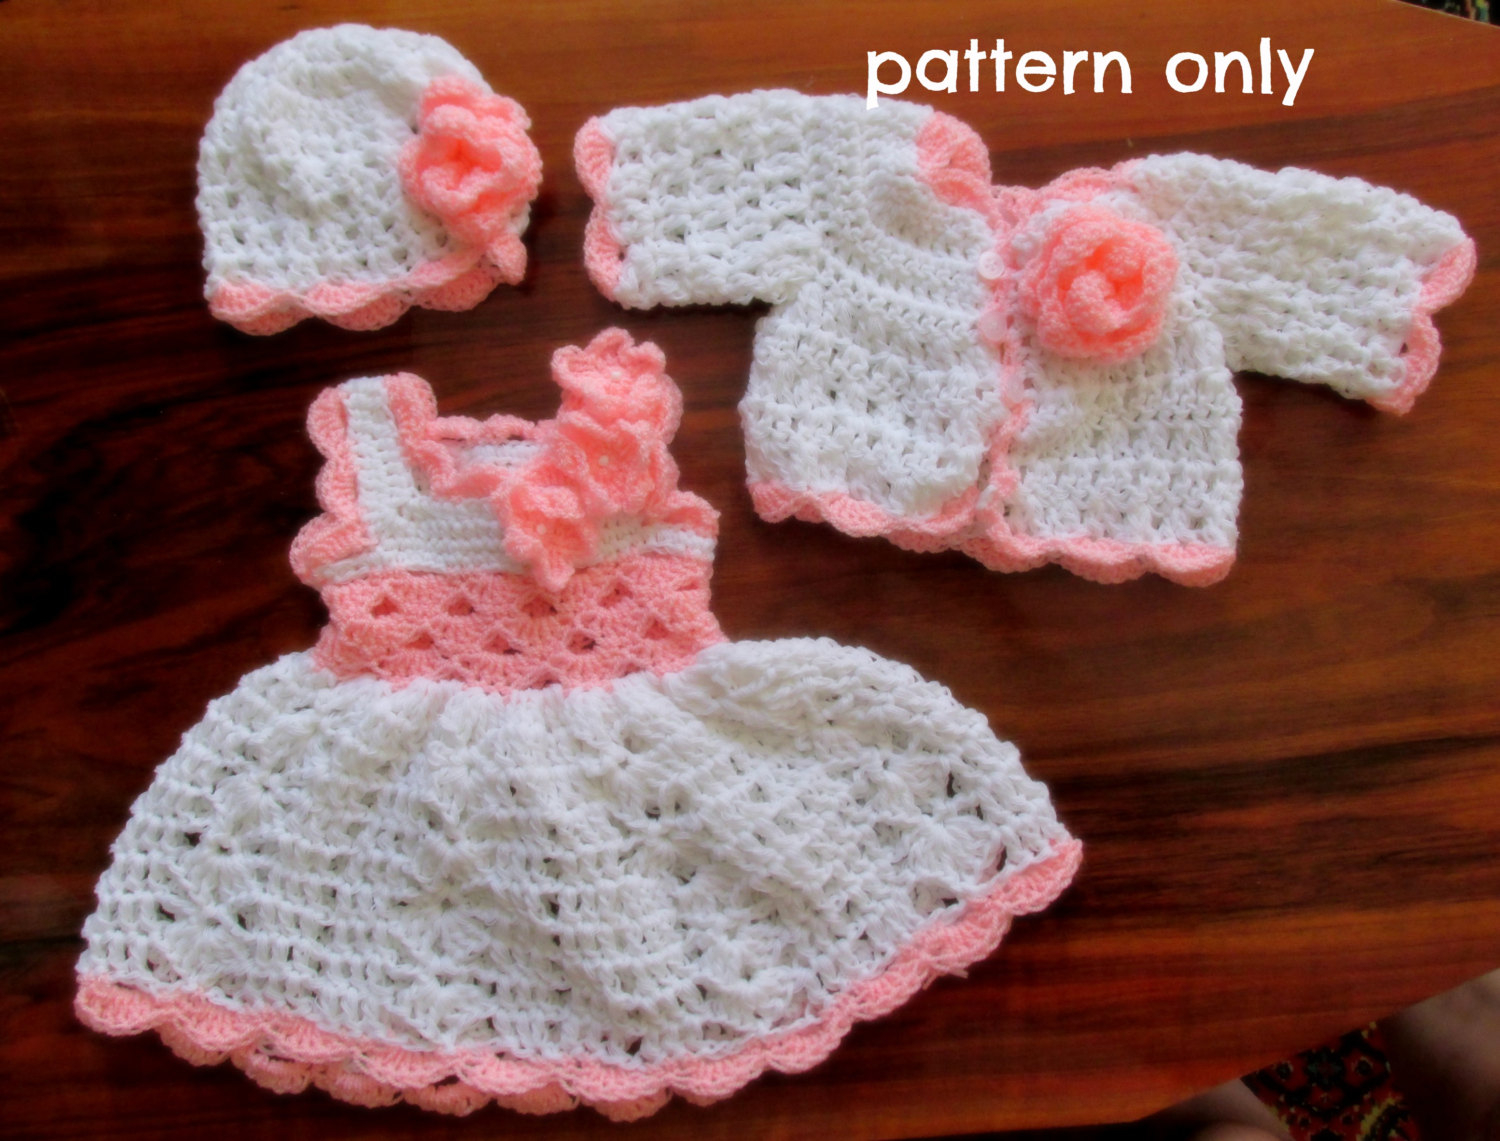 Crochet Patterns For Babies Crochet Pattern Pdf Ba Dress Pattern Newborn Crochet Set Etsy